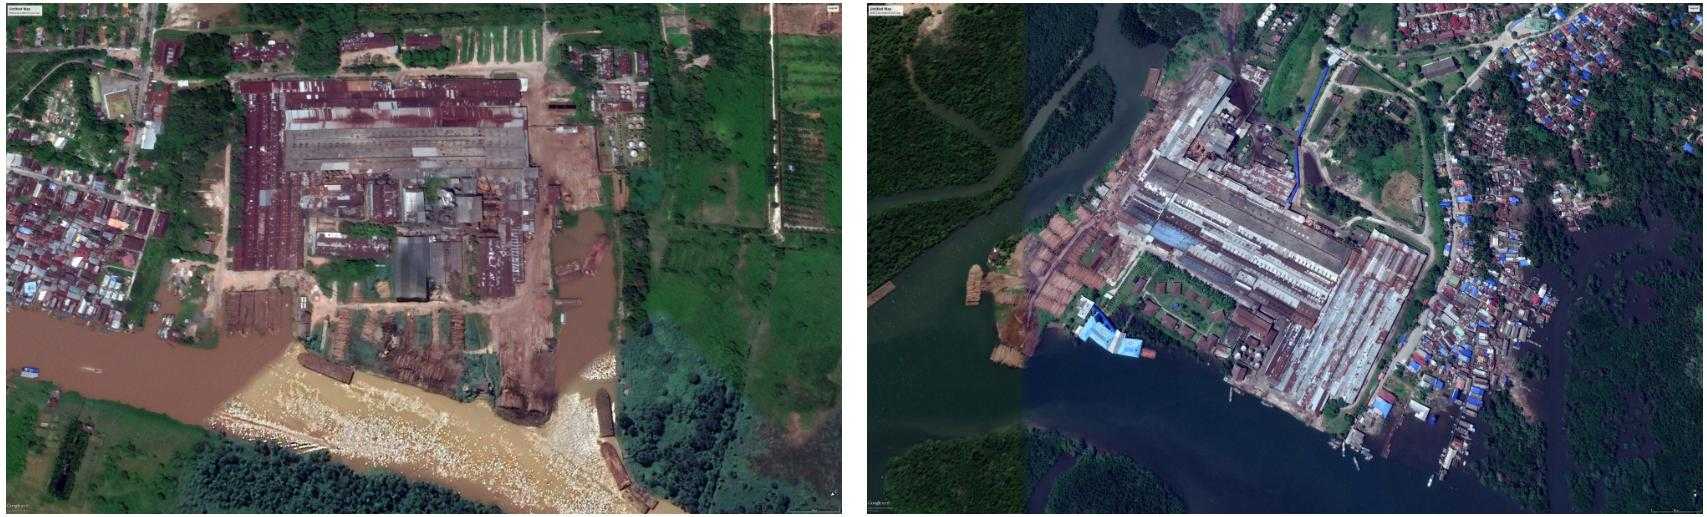 Citra satelit dari pabrik kayu milik Korindo Group di Kalimantan Tengah (sebelah kiri) dan Kalimantan Timur (sebelah kanan). 